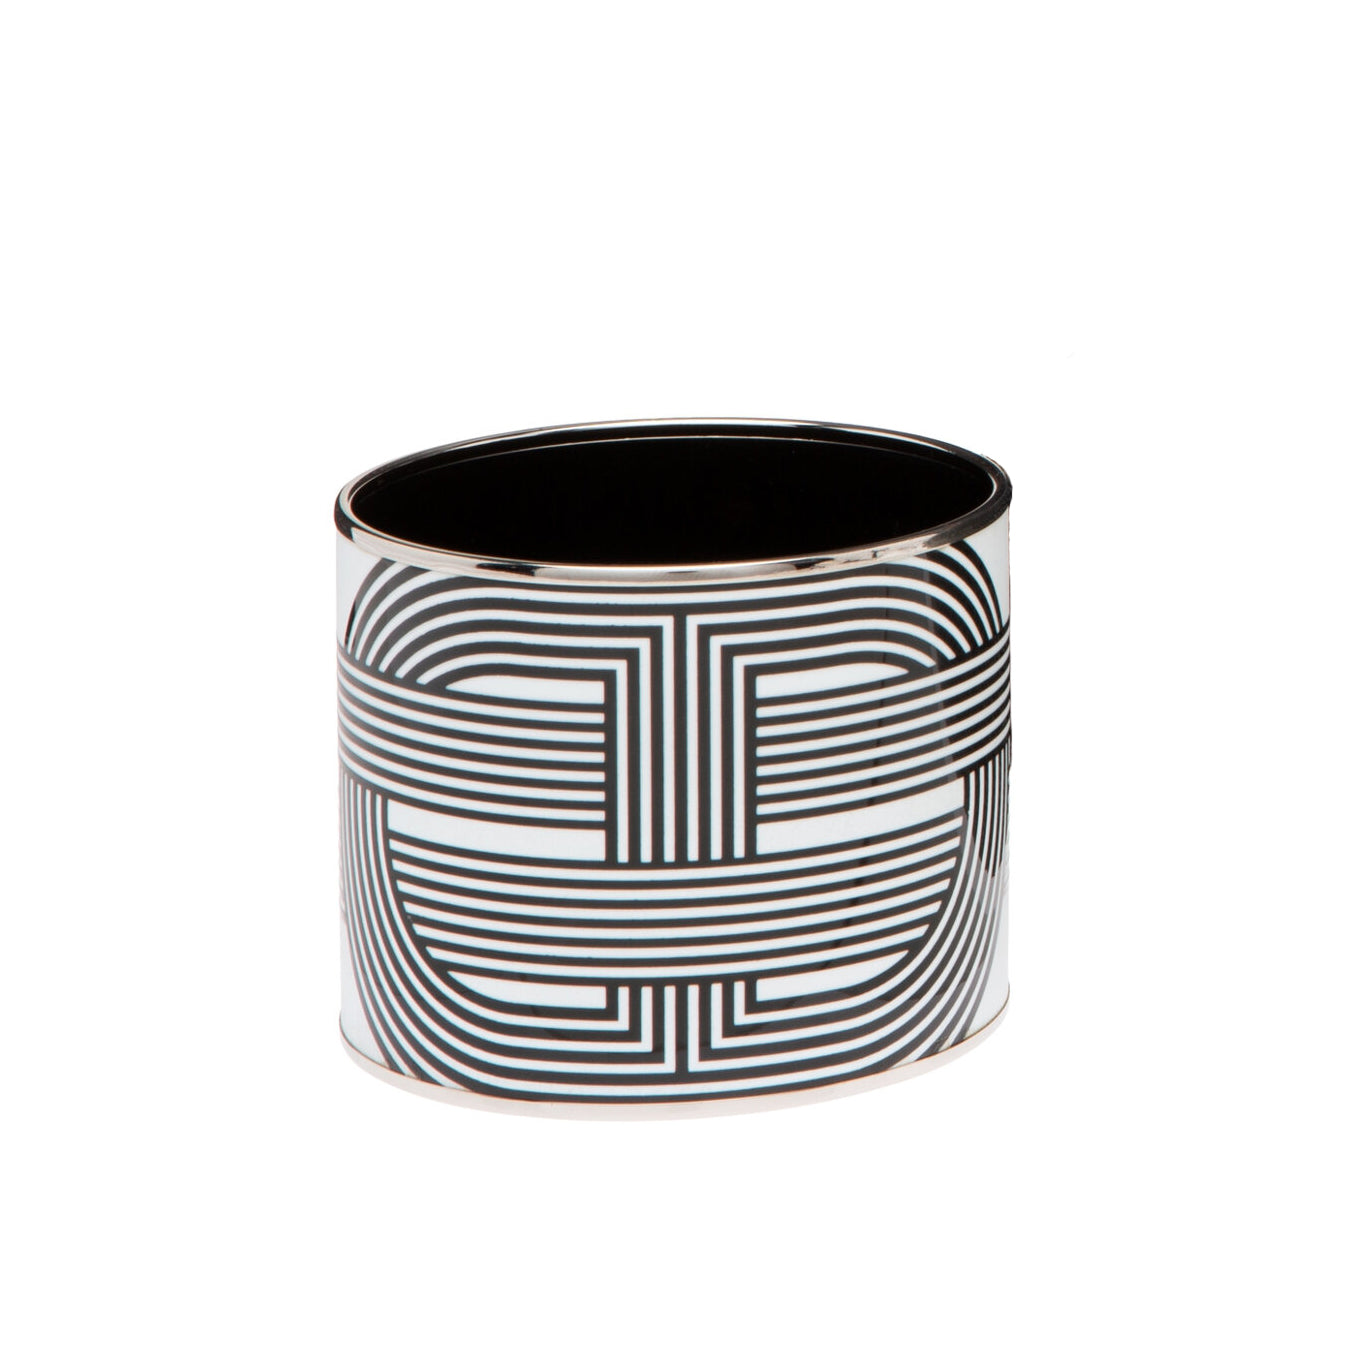 Hermès Black and White Enamel Cuff Bracelet